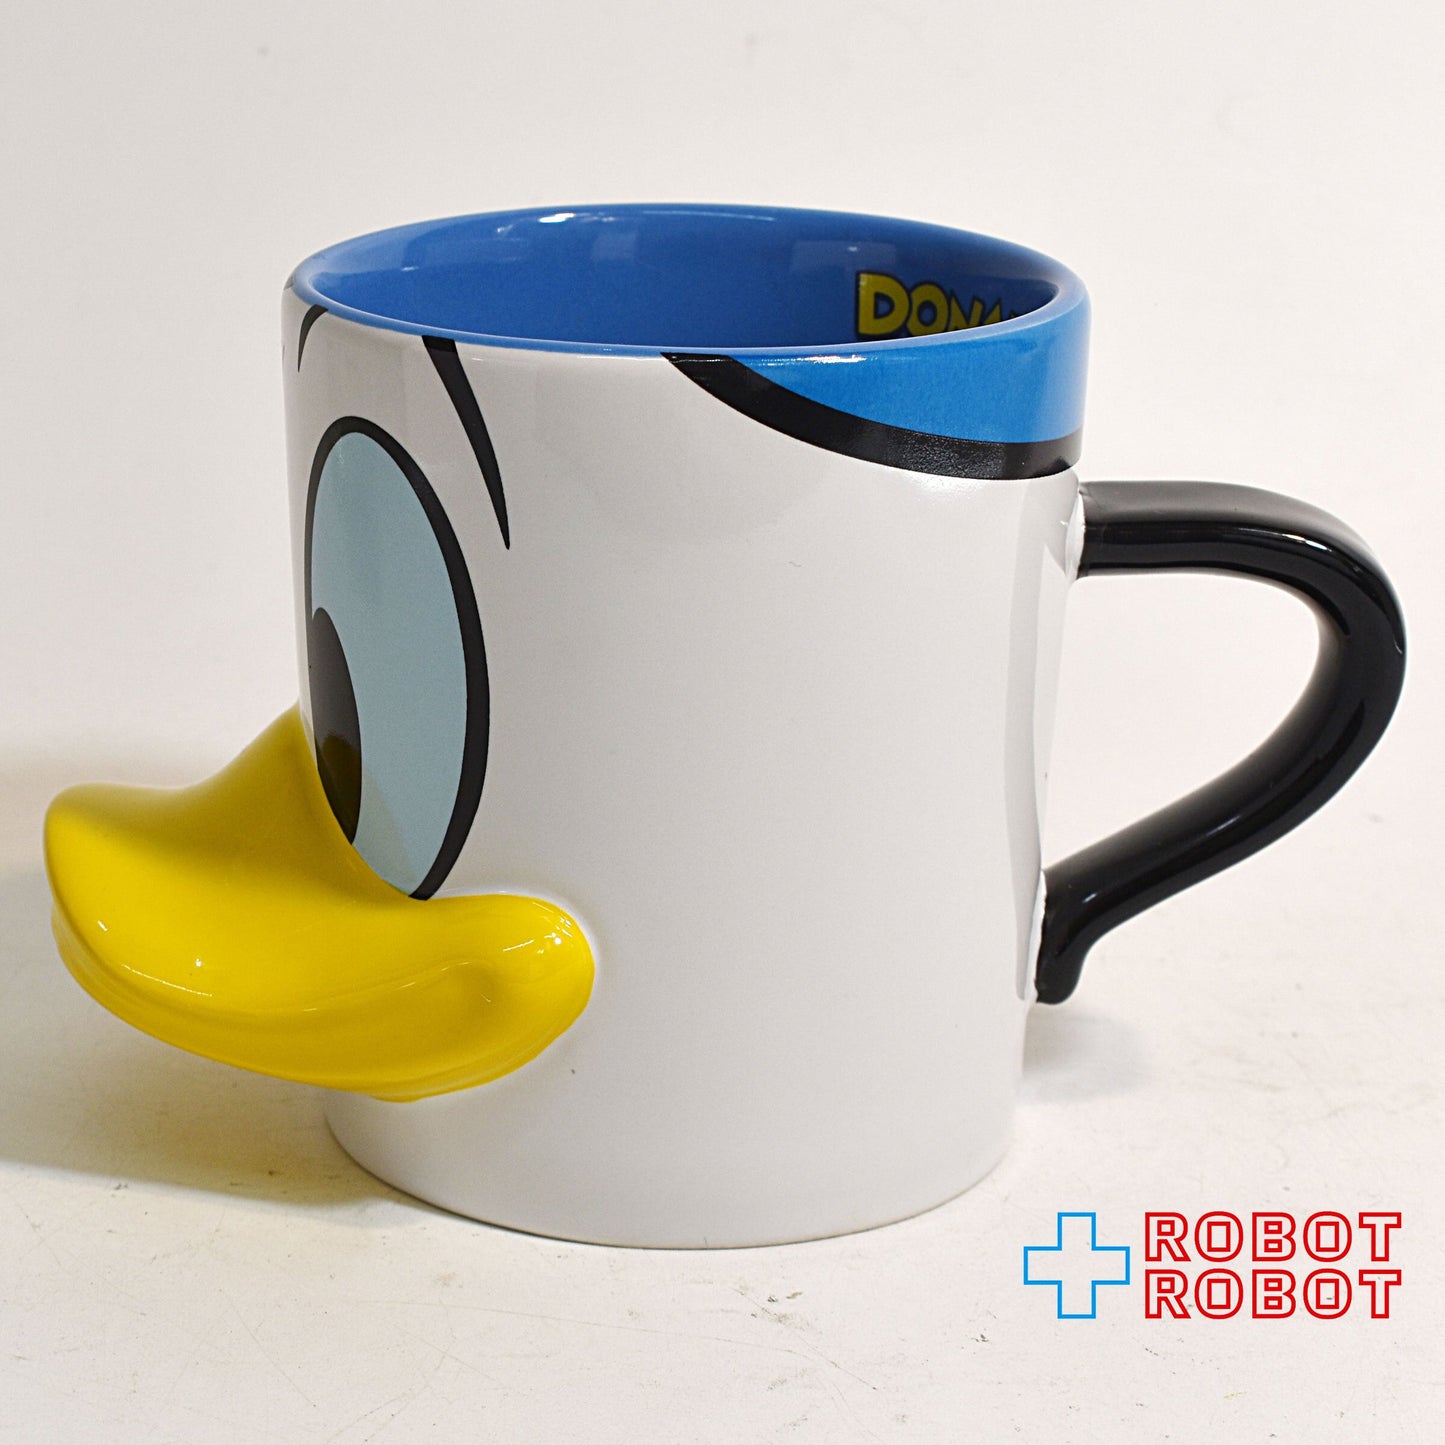 東京ディズニーリゾート ドナルドダック 顔の陶器マグカップ